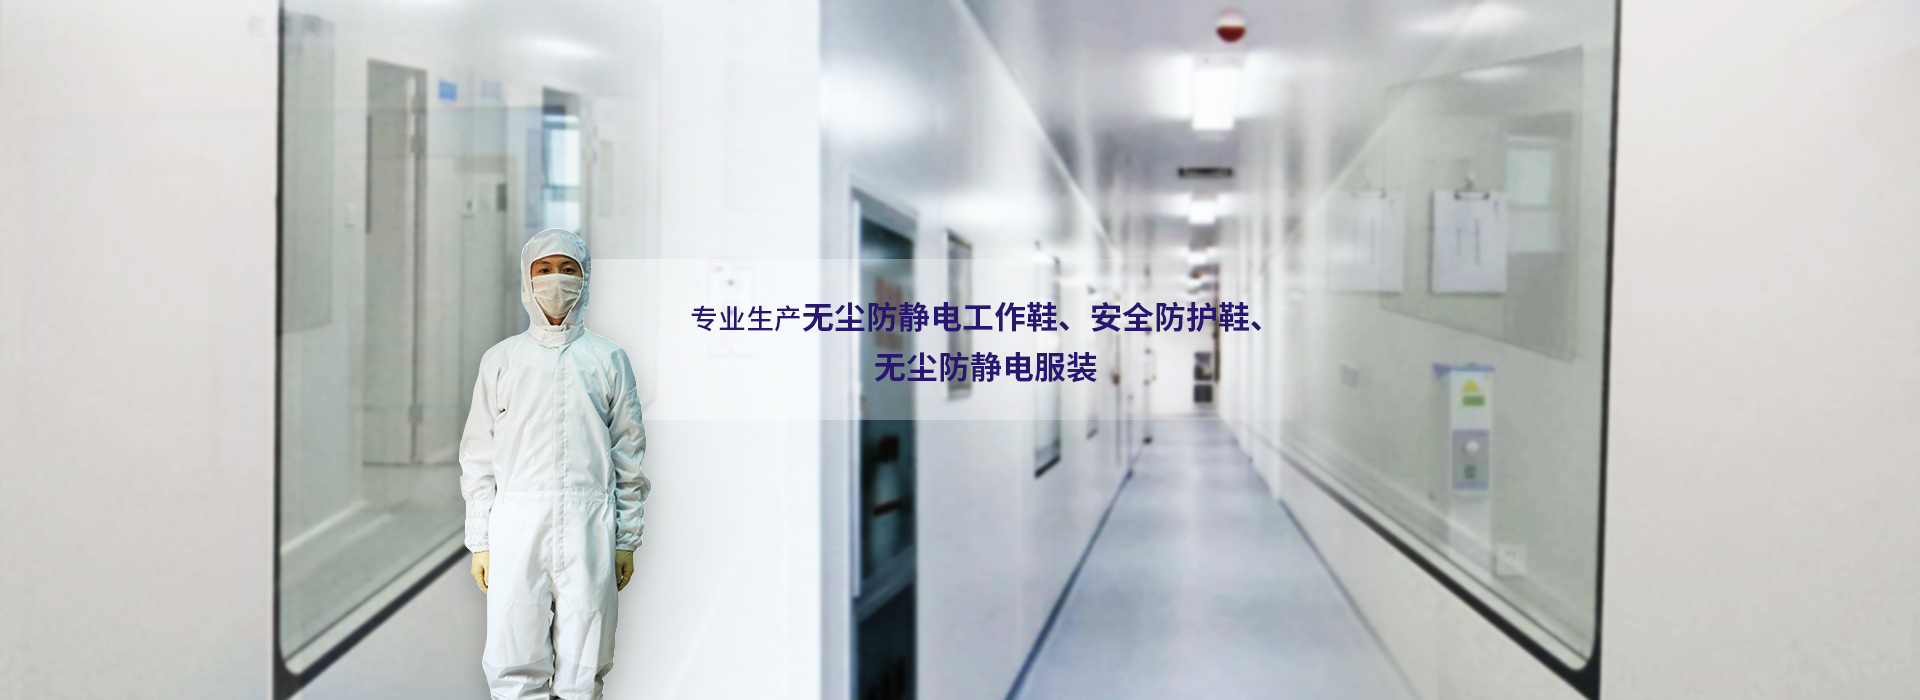 Suzhou Jing Rong Technology Co., Ltd.